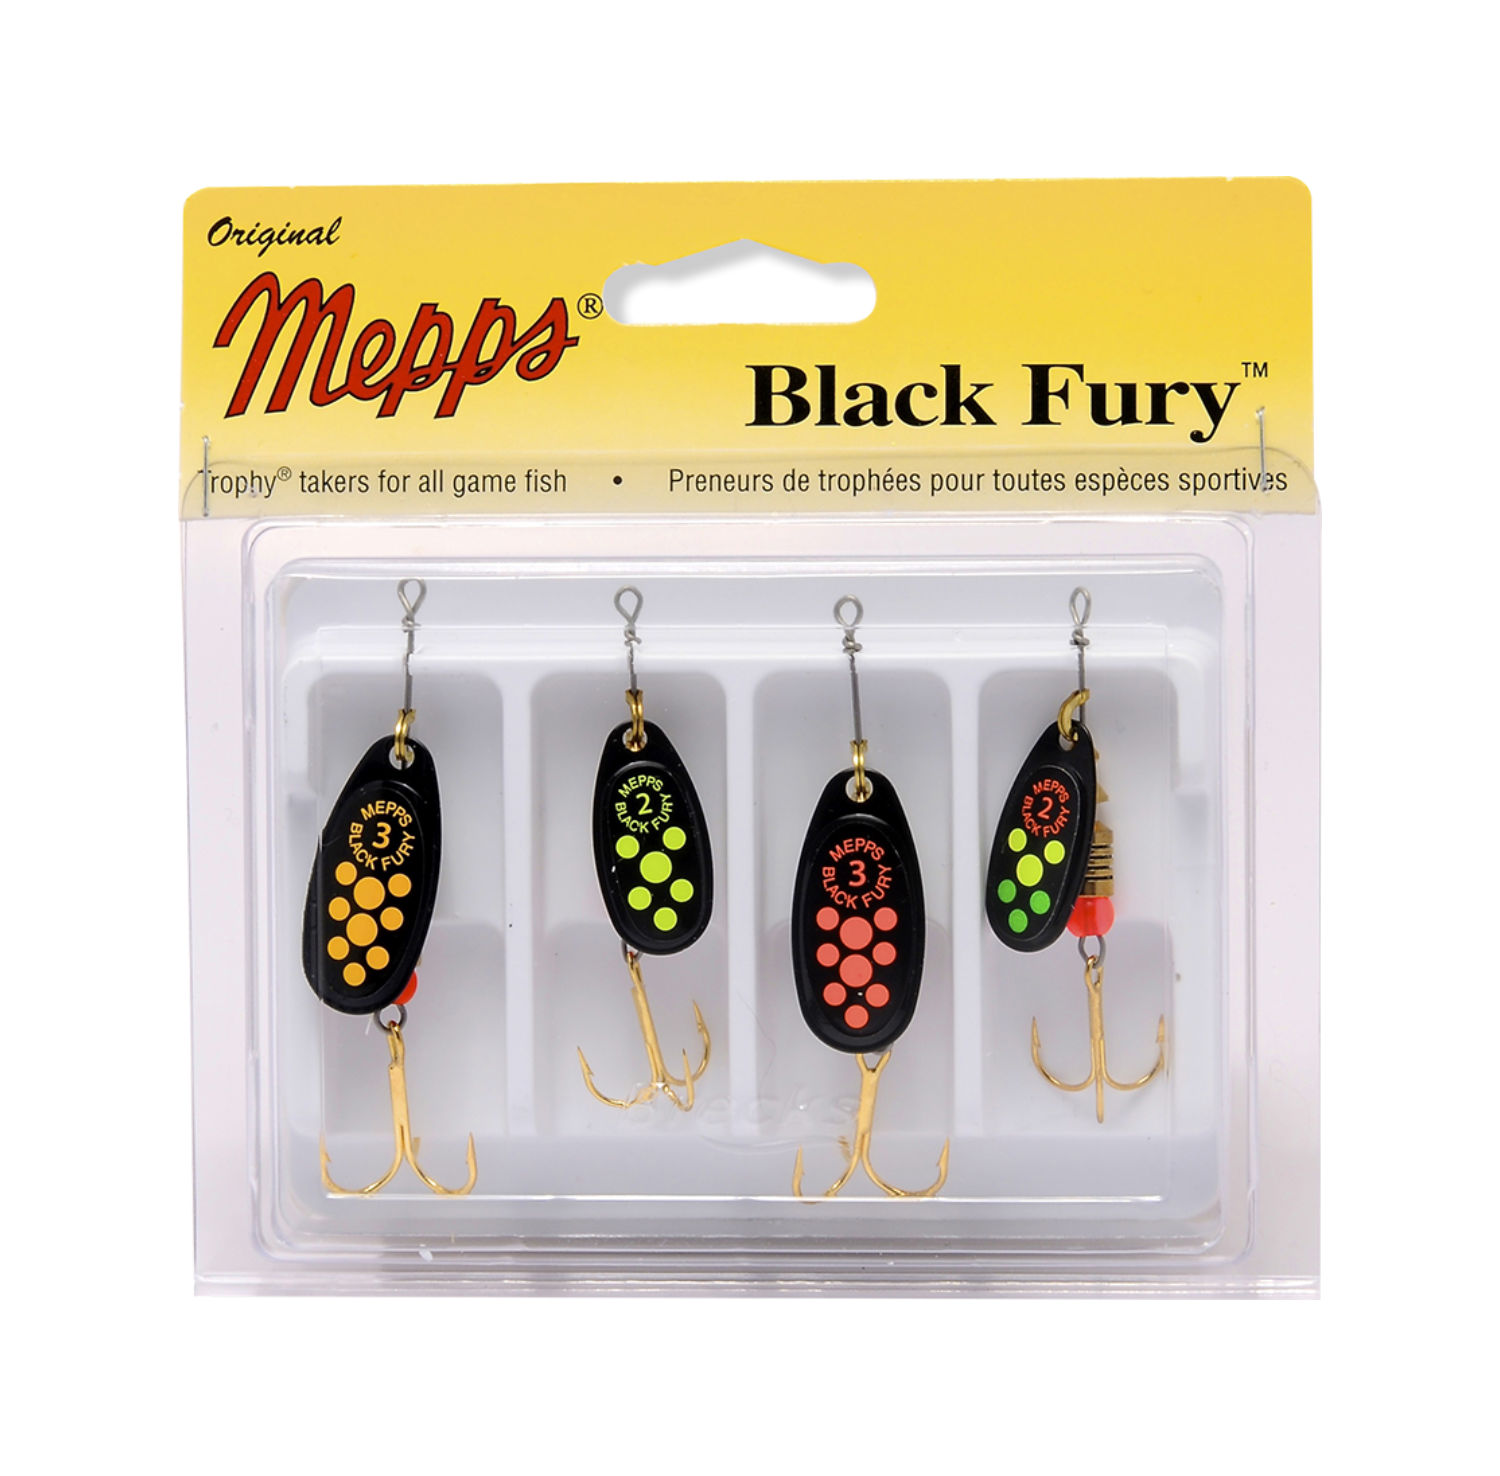 Mepps Black Fury 4-Pack